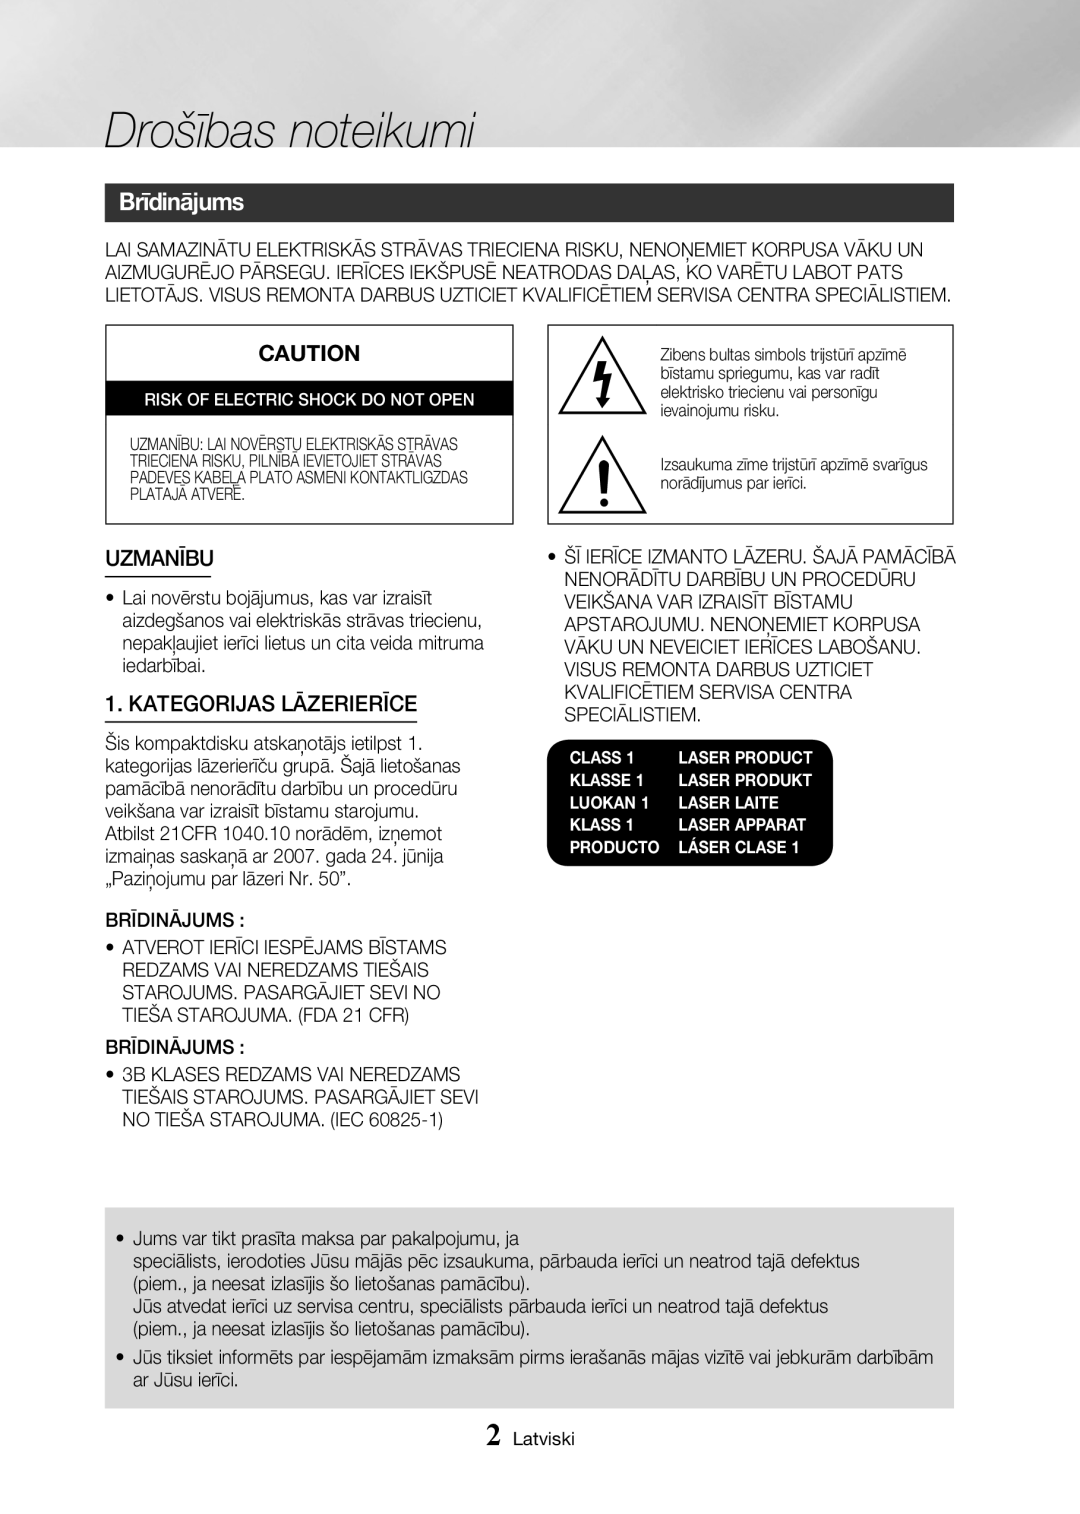 Samsung MX-HS8000/EN manual Drošības noteikumi, Brīdinājums, Uzmanību, Kategorijas Lāzerierīce 